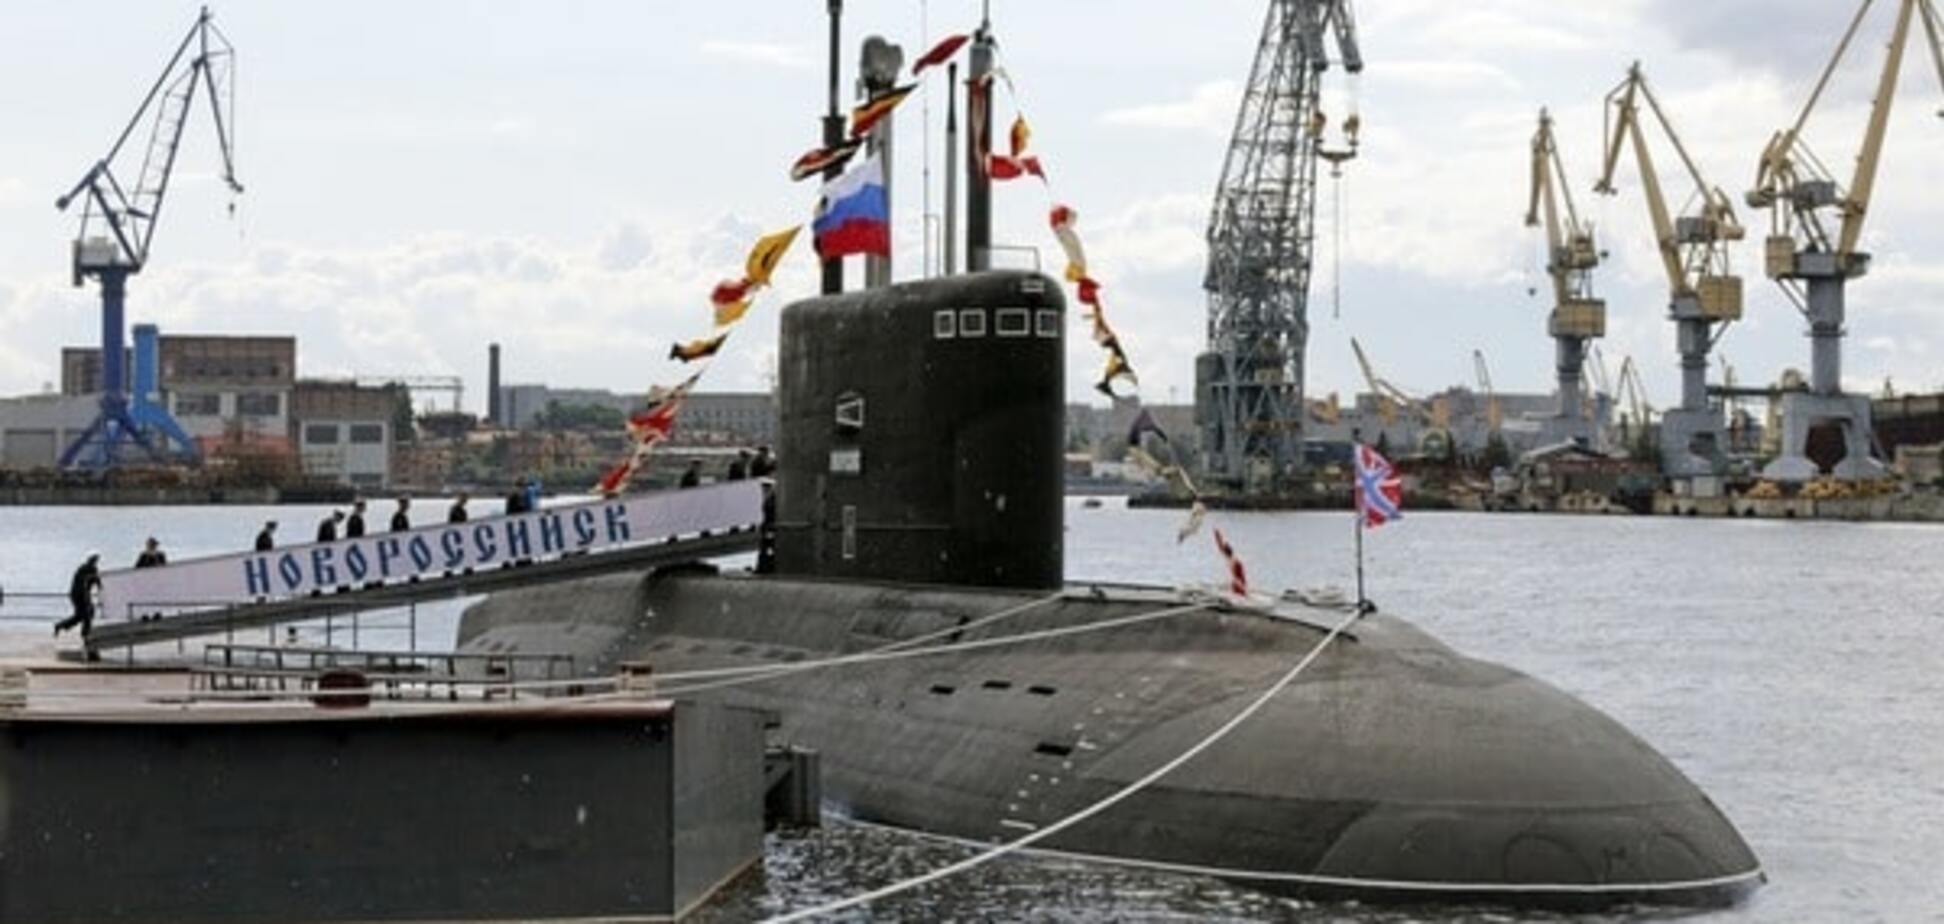 Міноборони Польщі викрило фейк росЗМІ про зіткнення субмарин